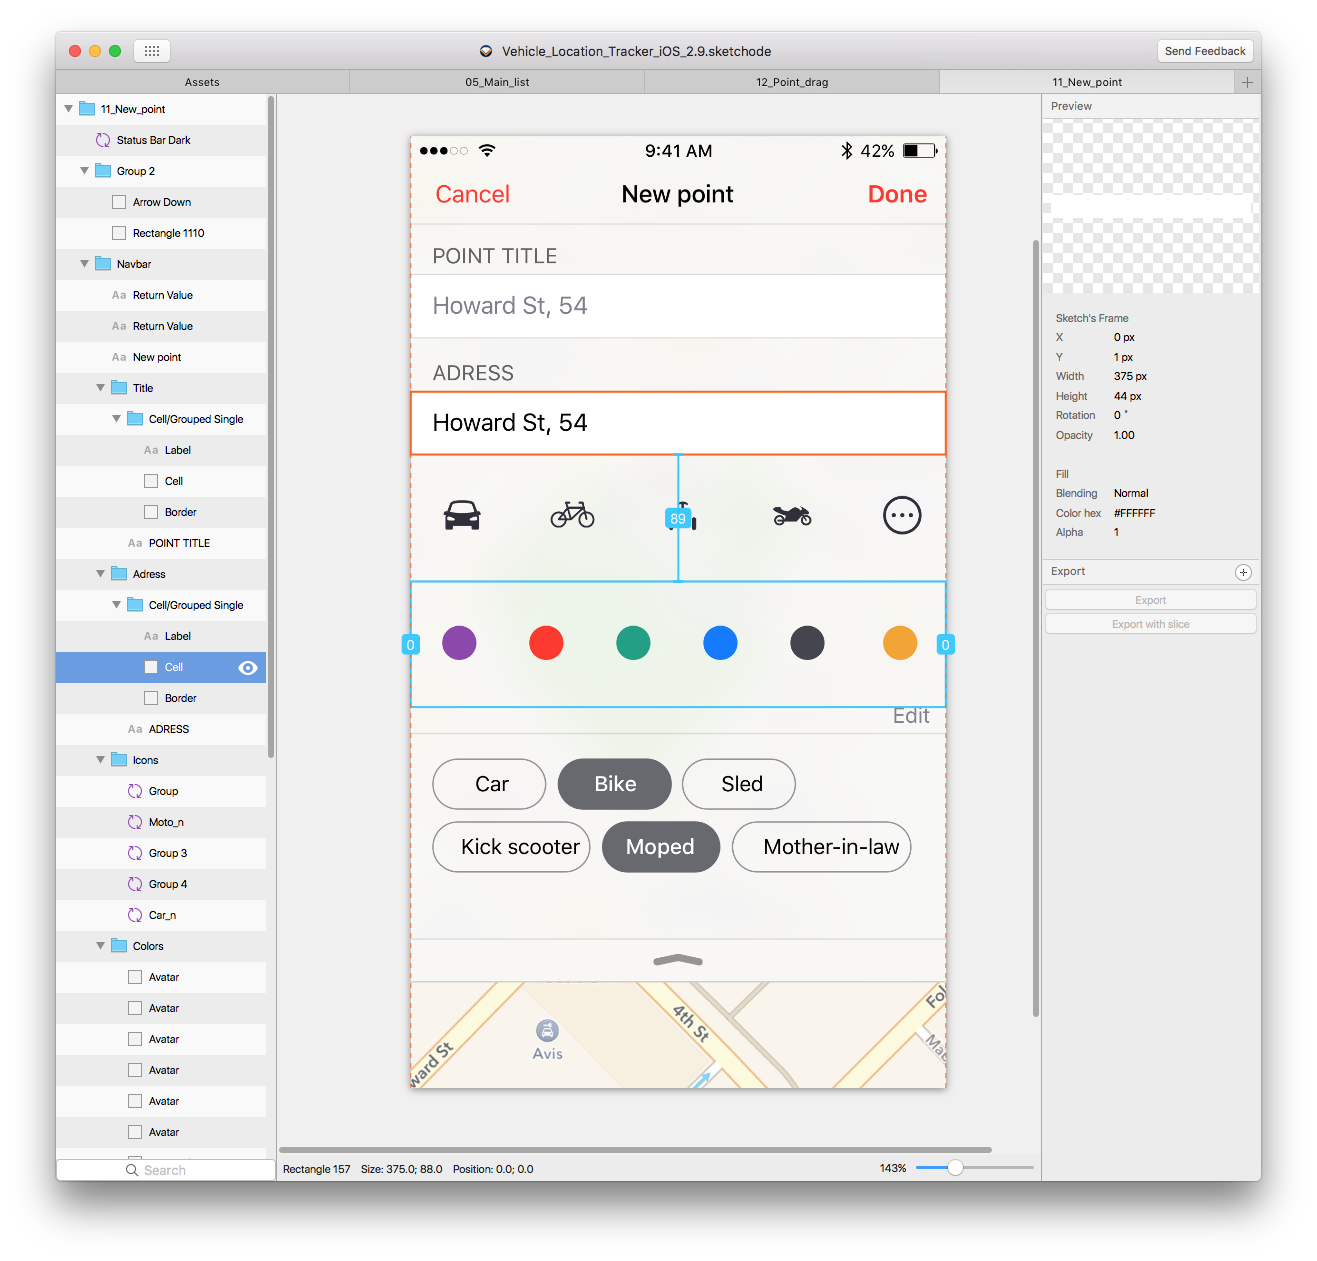 Реализация интерфейса с выдвижной панелью в iOS приложении - 5